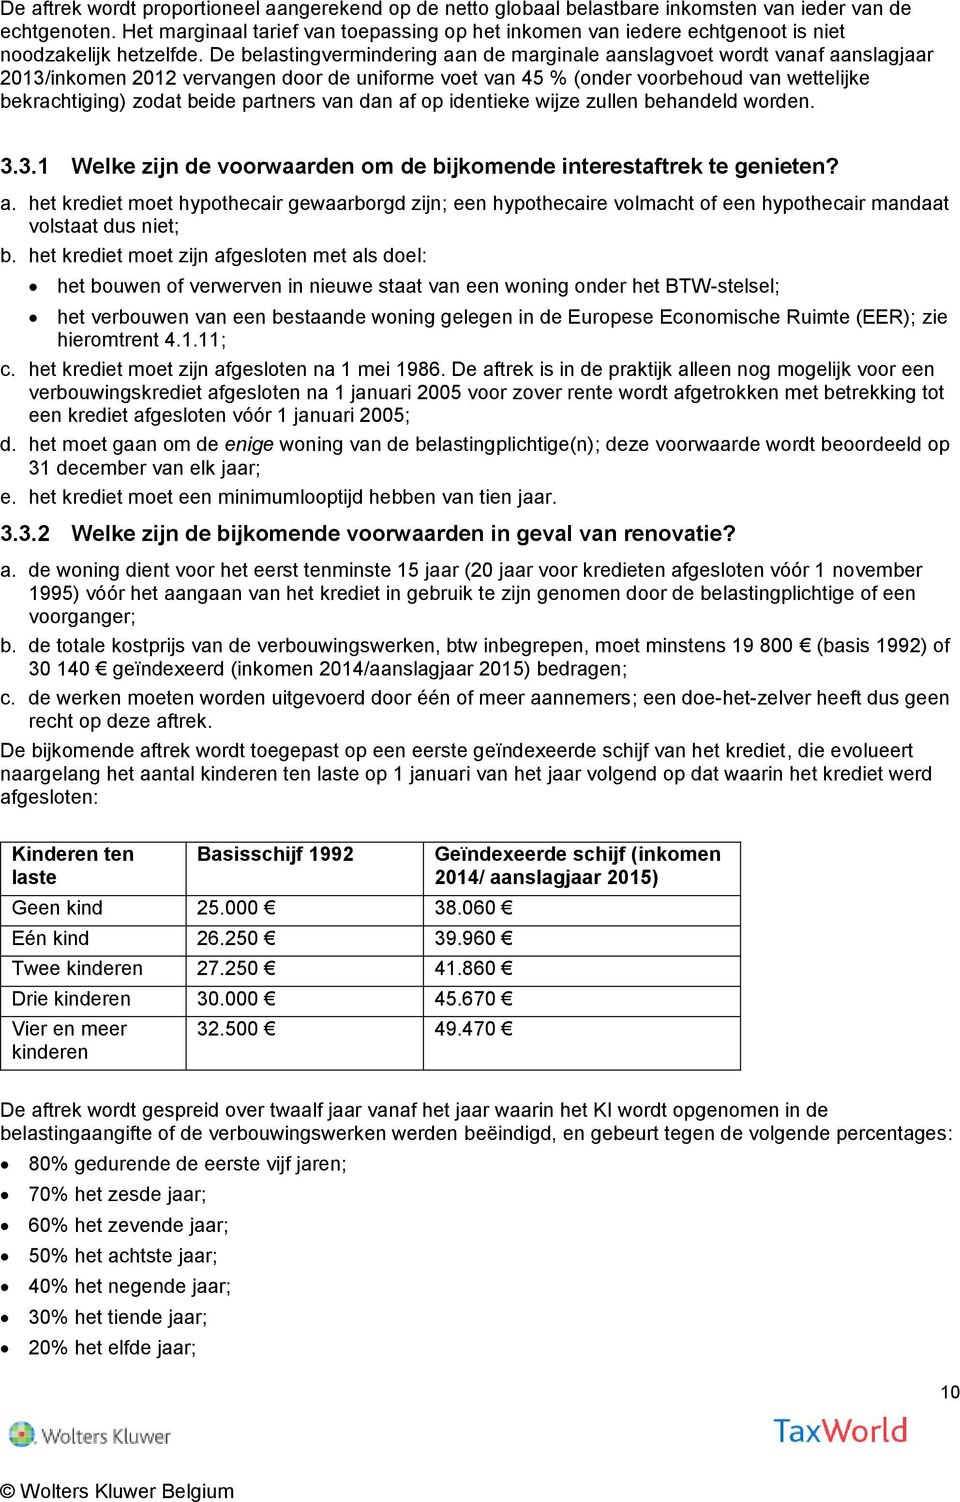 De belastingvermindering aan de marginale aanslagvoet wordt vanaf aanslagjaar 2013/inkomen 2012 vervangen door de uniforme voet van 45 % (onder voorbehoud van wettelijke bekrachtiging) zodat beide